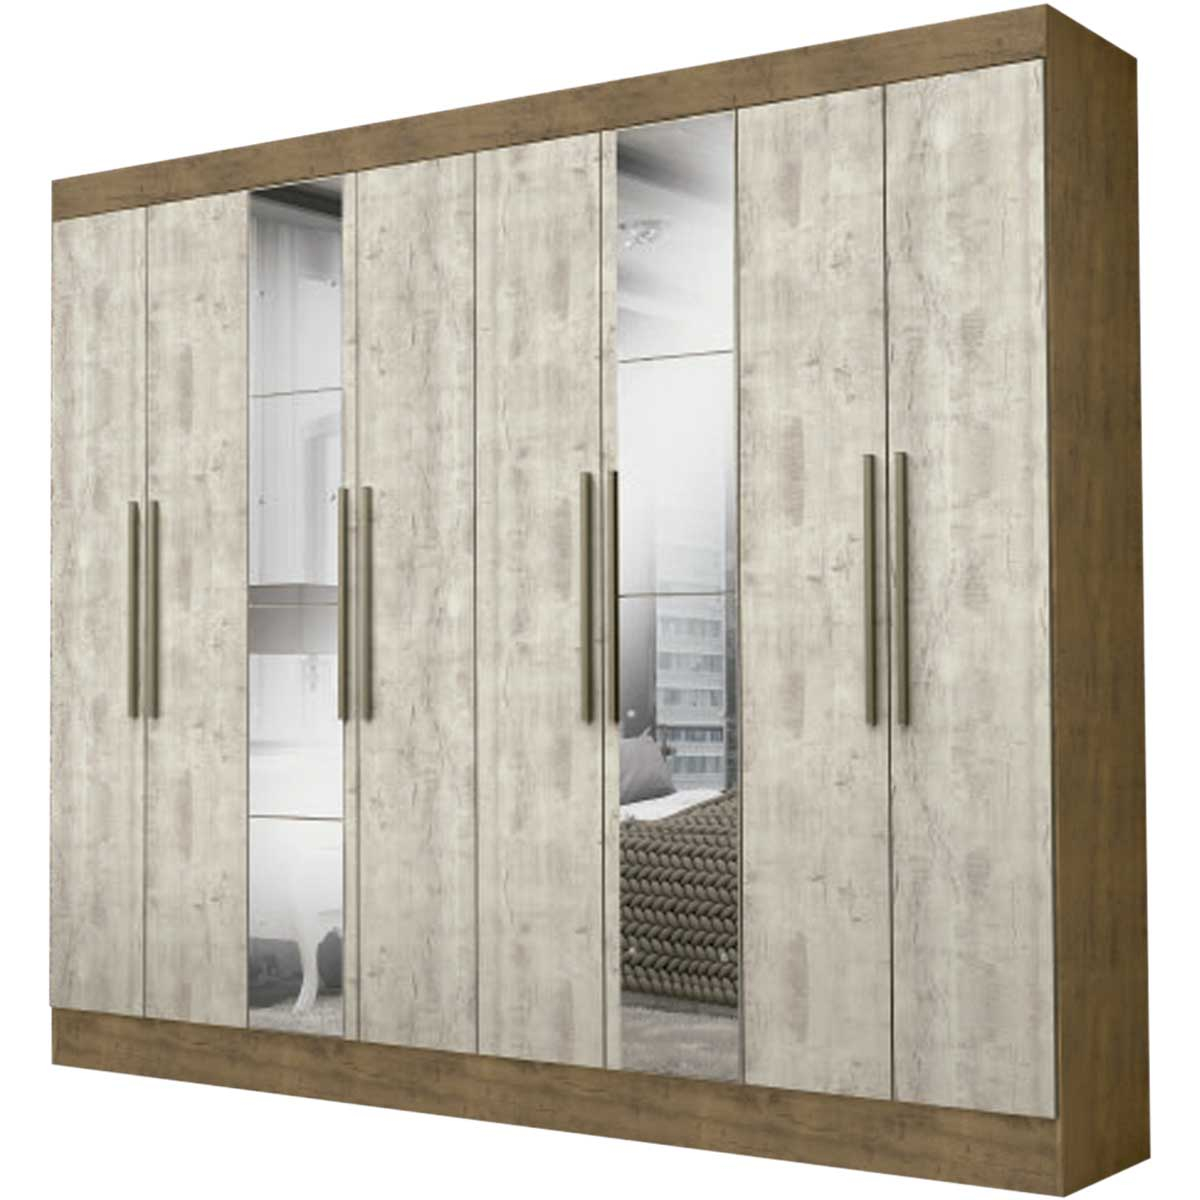 Ropero Closet Moderno con Espejo 3 Puertas  2 Cajones Internos Rieles Metálicos Color IPE / Vainilla